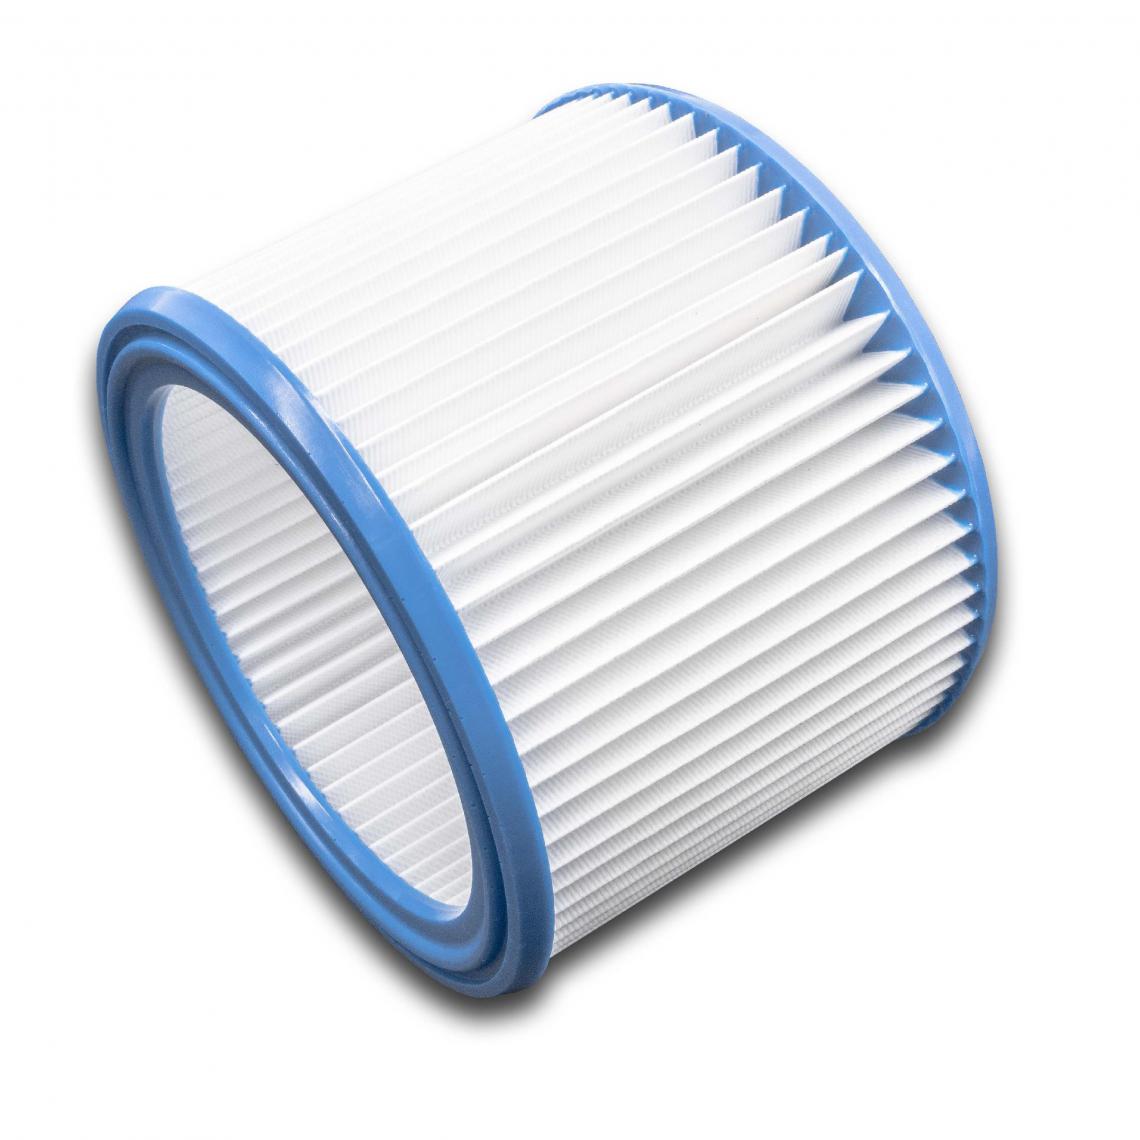 Vhbw - vhbw Set de filtres 10x Filtre plissé compatible avec Nilfisk 400, 40-21 XC Inox, 440, 600, 640, 800 aspirateur à sec ou humide - Filtre à cartouche - Accessoire entretien des sols